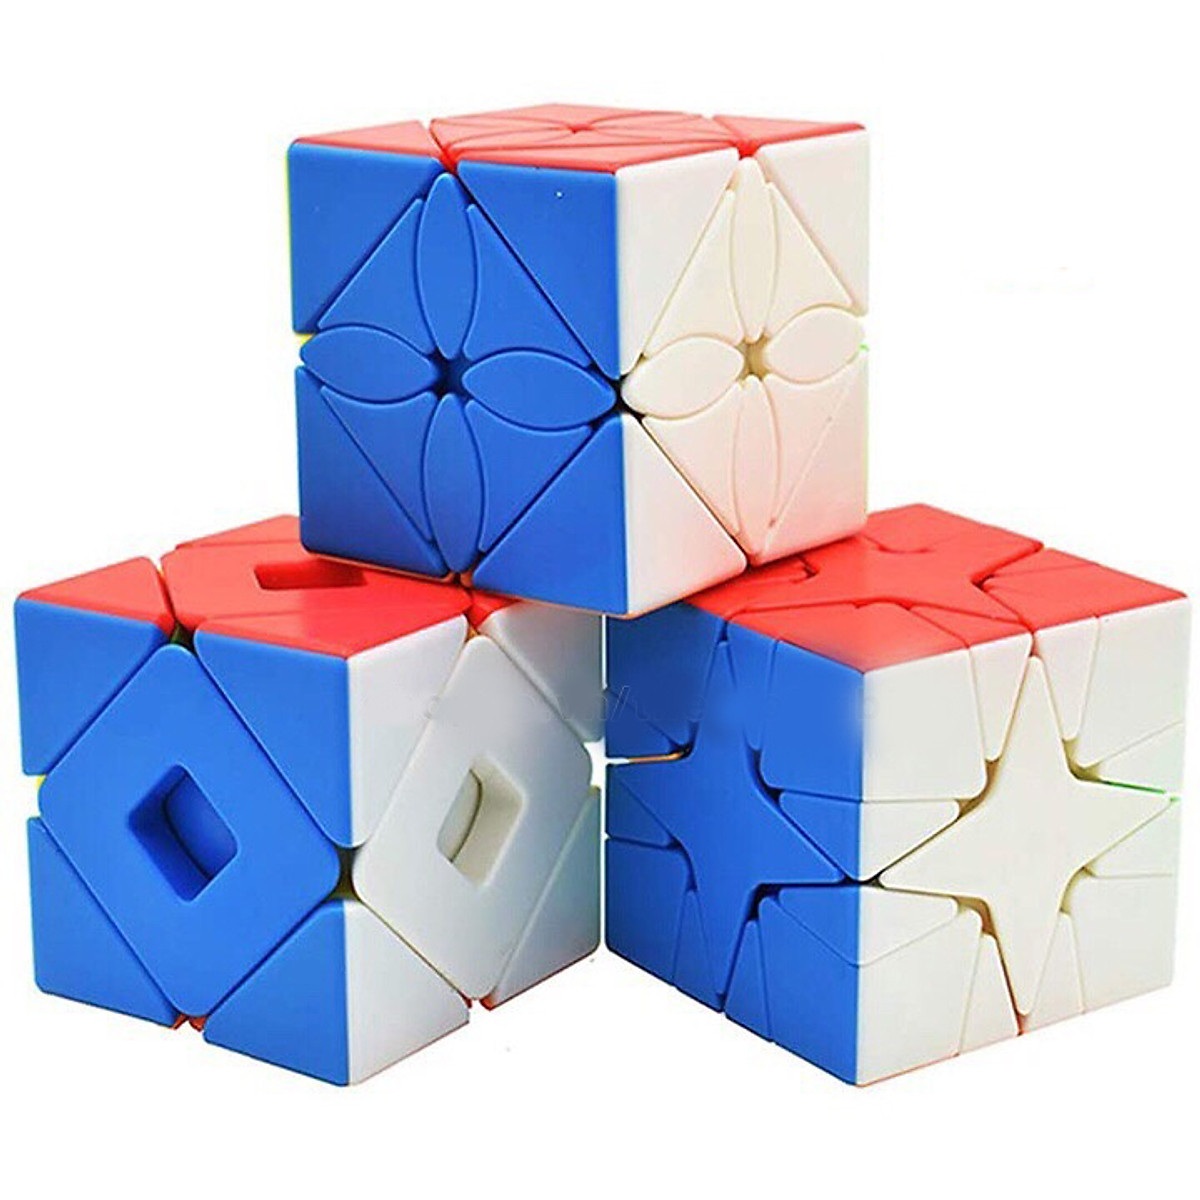 Rubik cao cấp - Bộ 3 sản phẩm